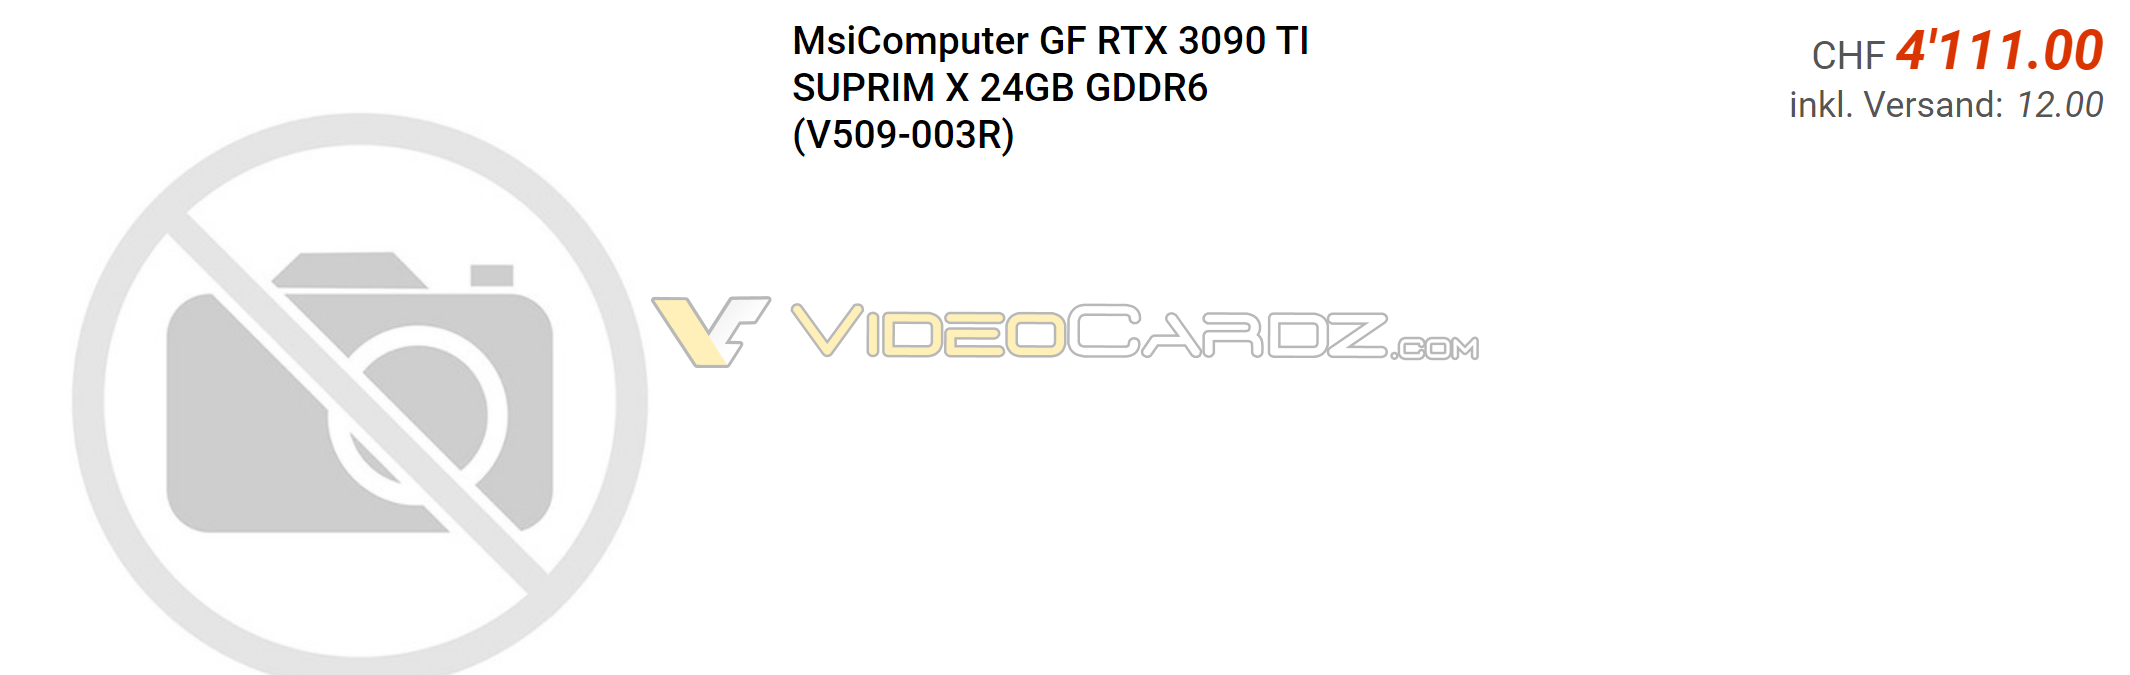 RTX 3090 Ti bản custom lên kệ với giá ít nhất gần 4000 USD - Image 3